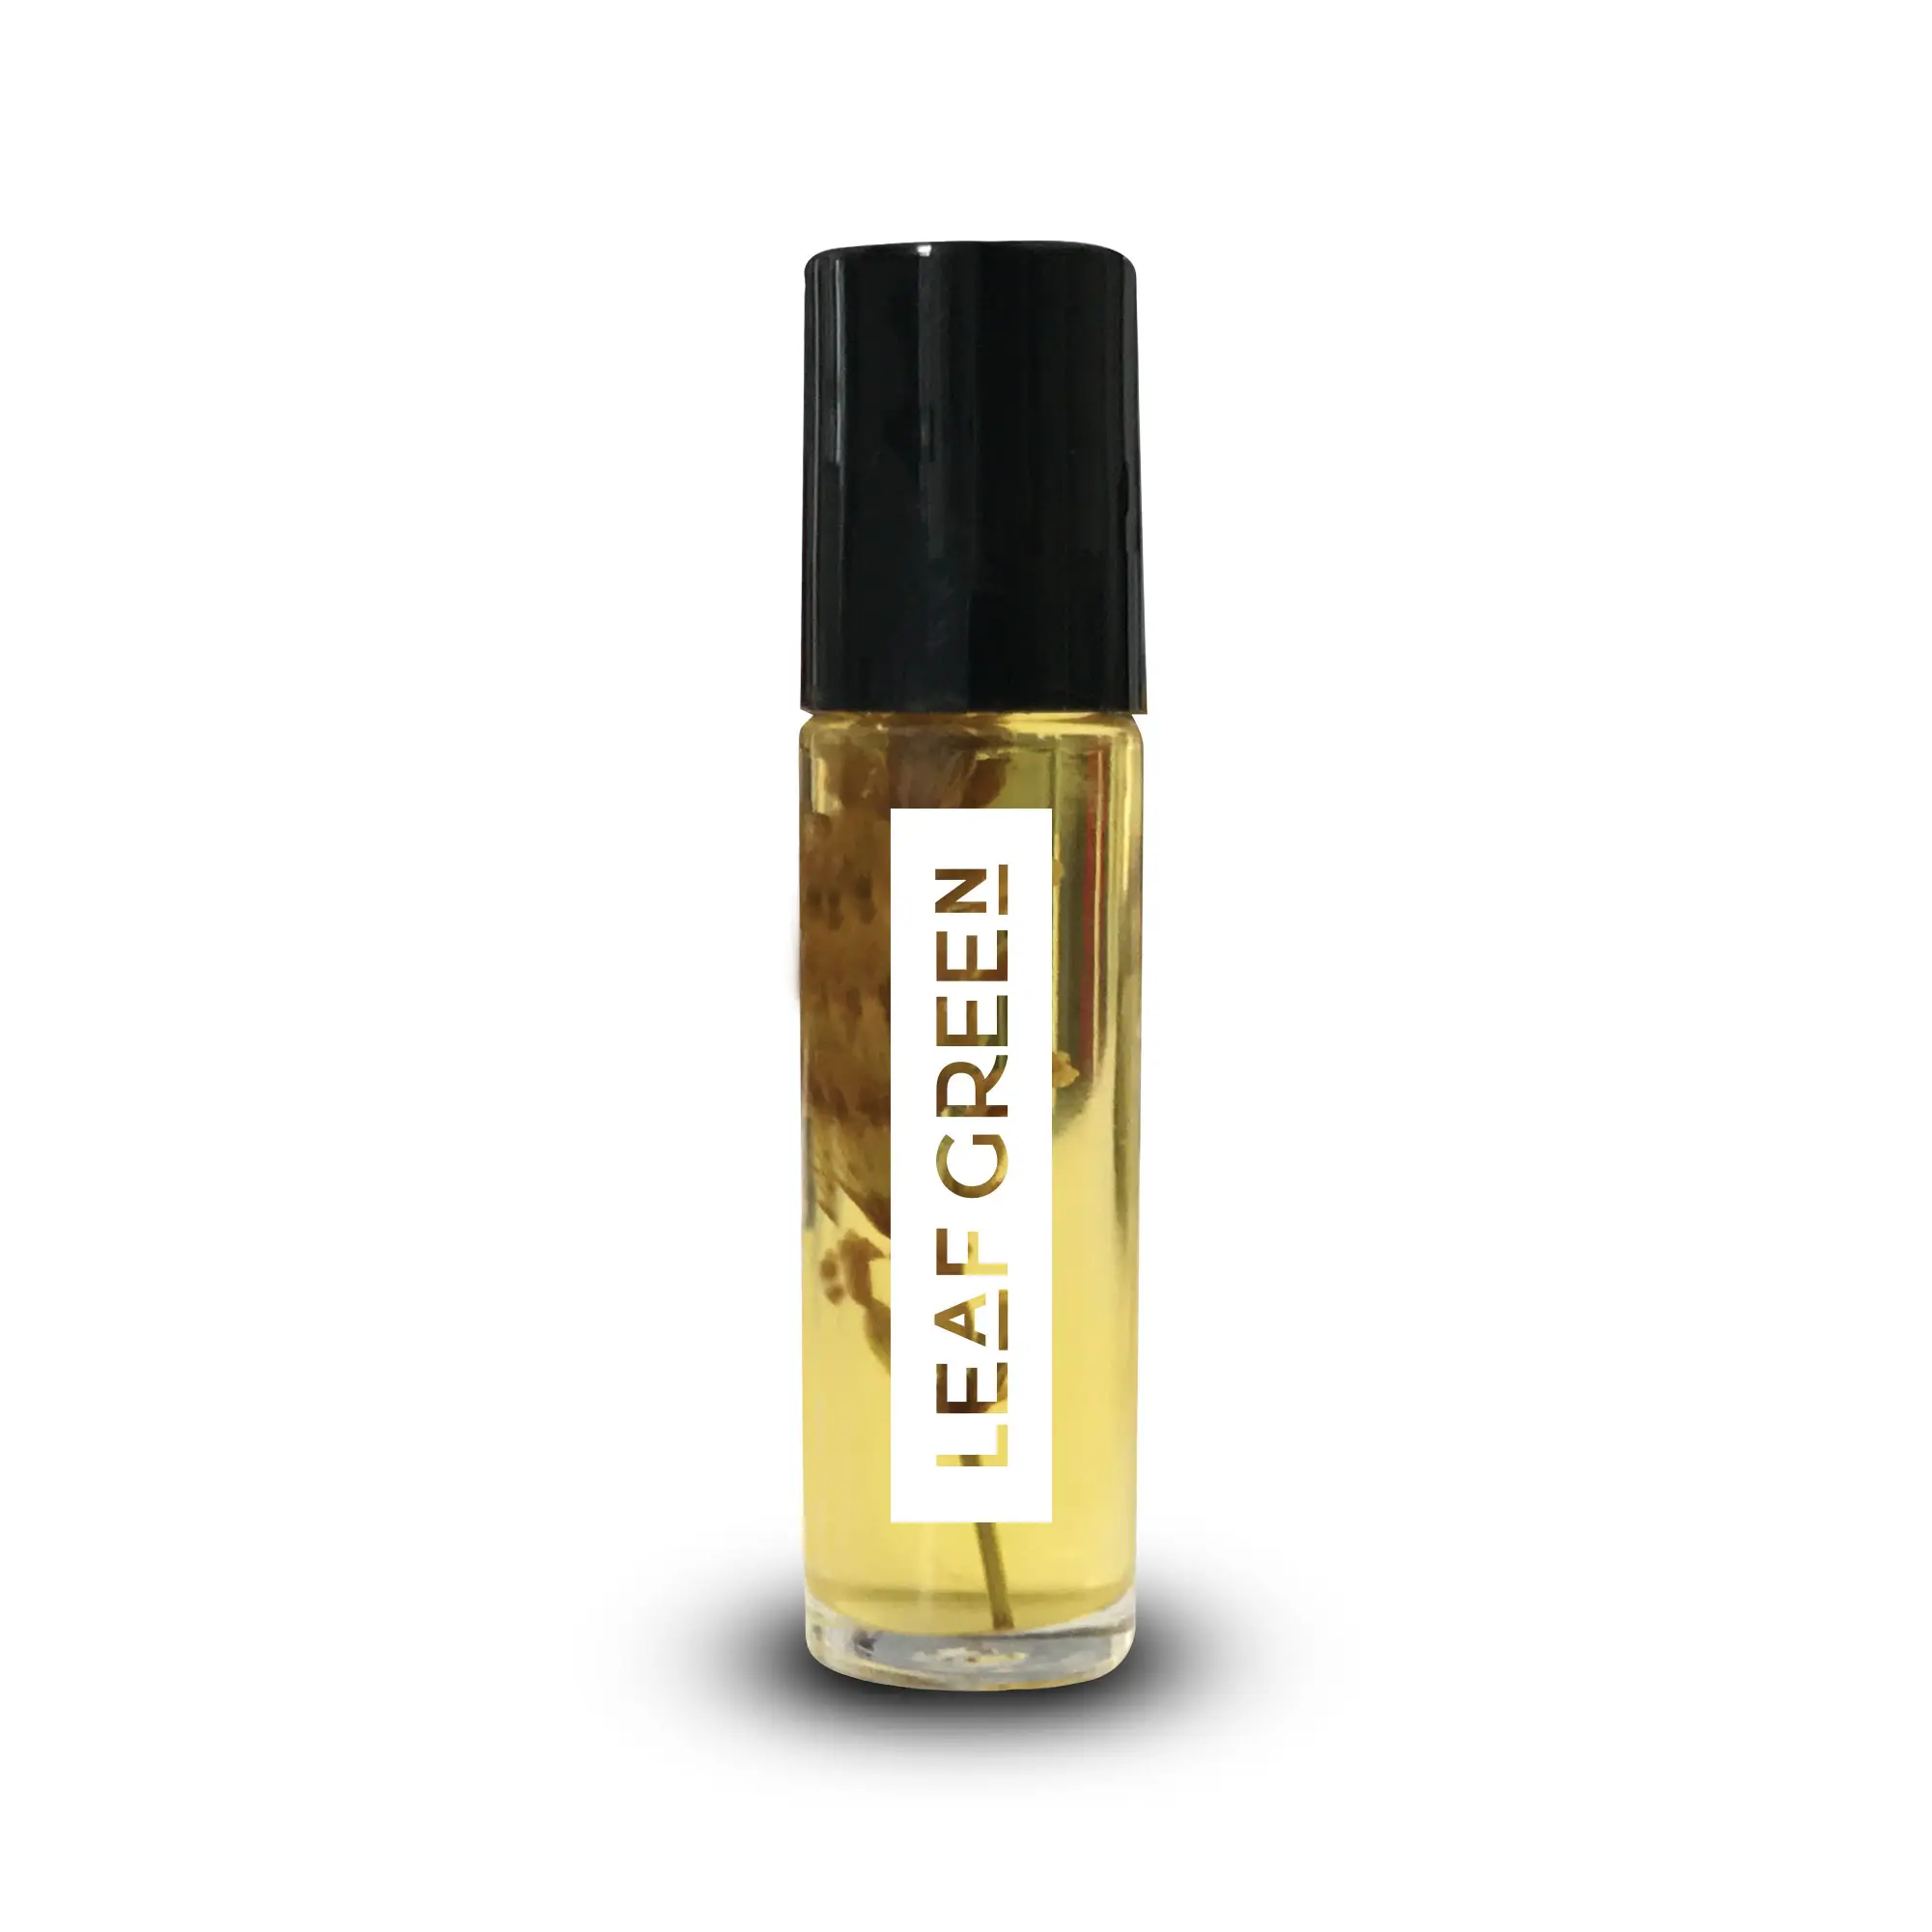 Made in Italy Aroma therapie Ess. Öl eine Vielzahl von Duftstoffen Hochwertige Lavendel OEM ODM Duftöl Glasflasche